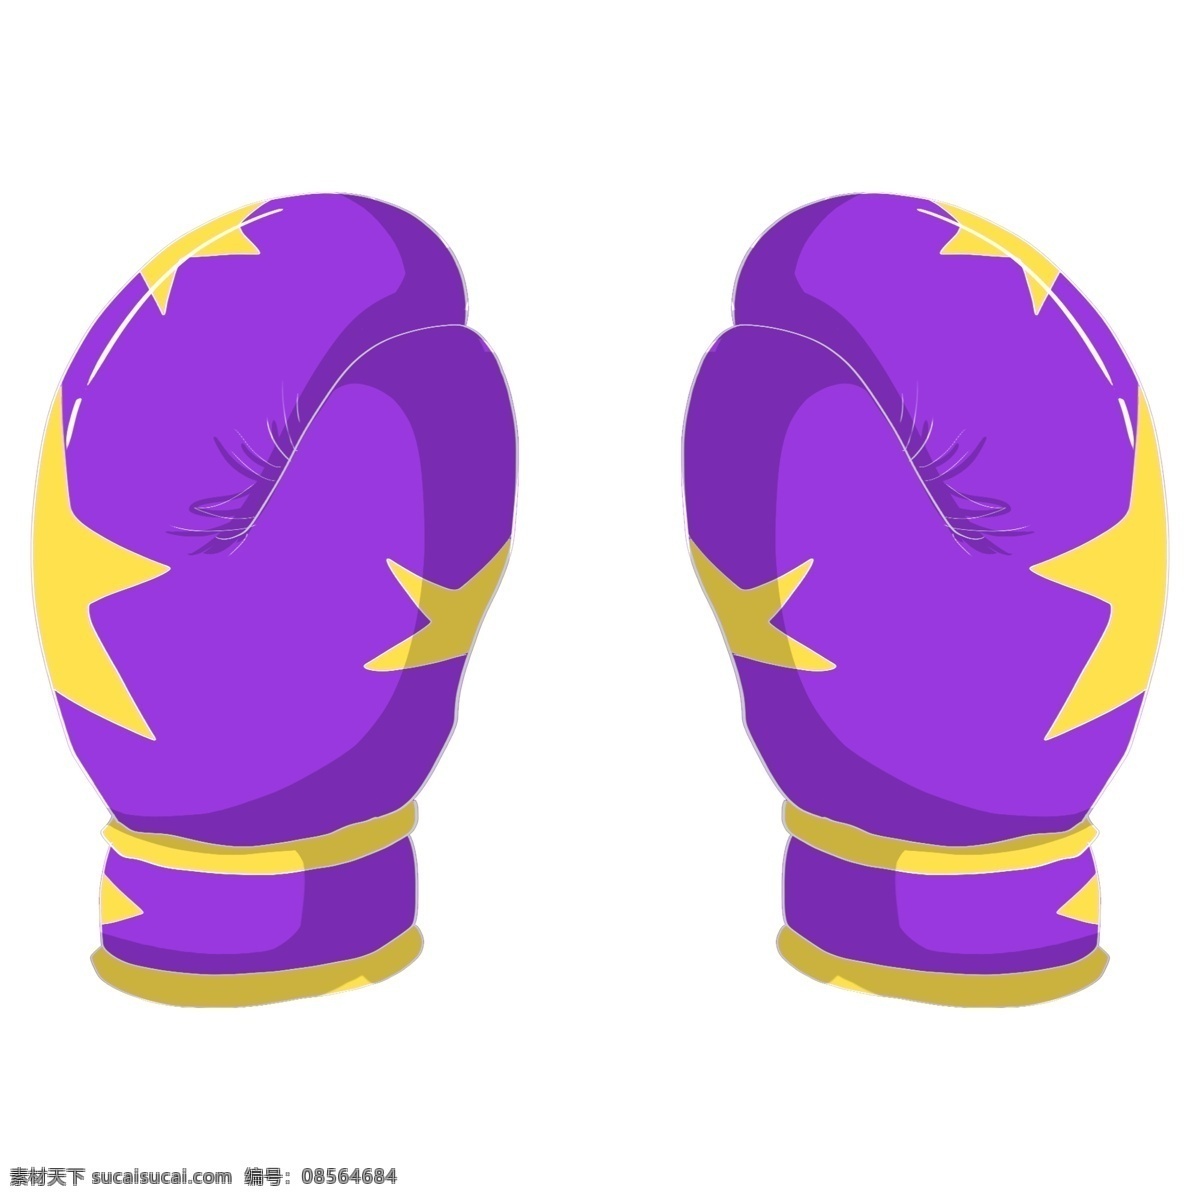 手绘 紫色 拳击 手套 紫色的手套 保护的手套 卡通插画 手绘手套插画 拳击手套插画 打拳的手套